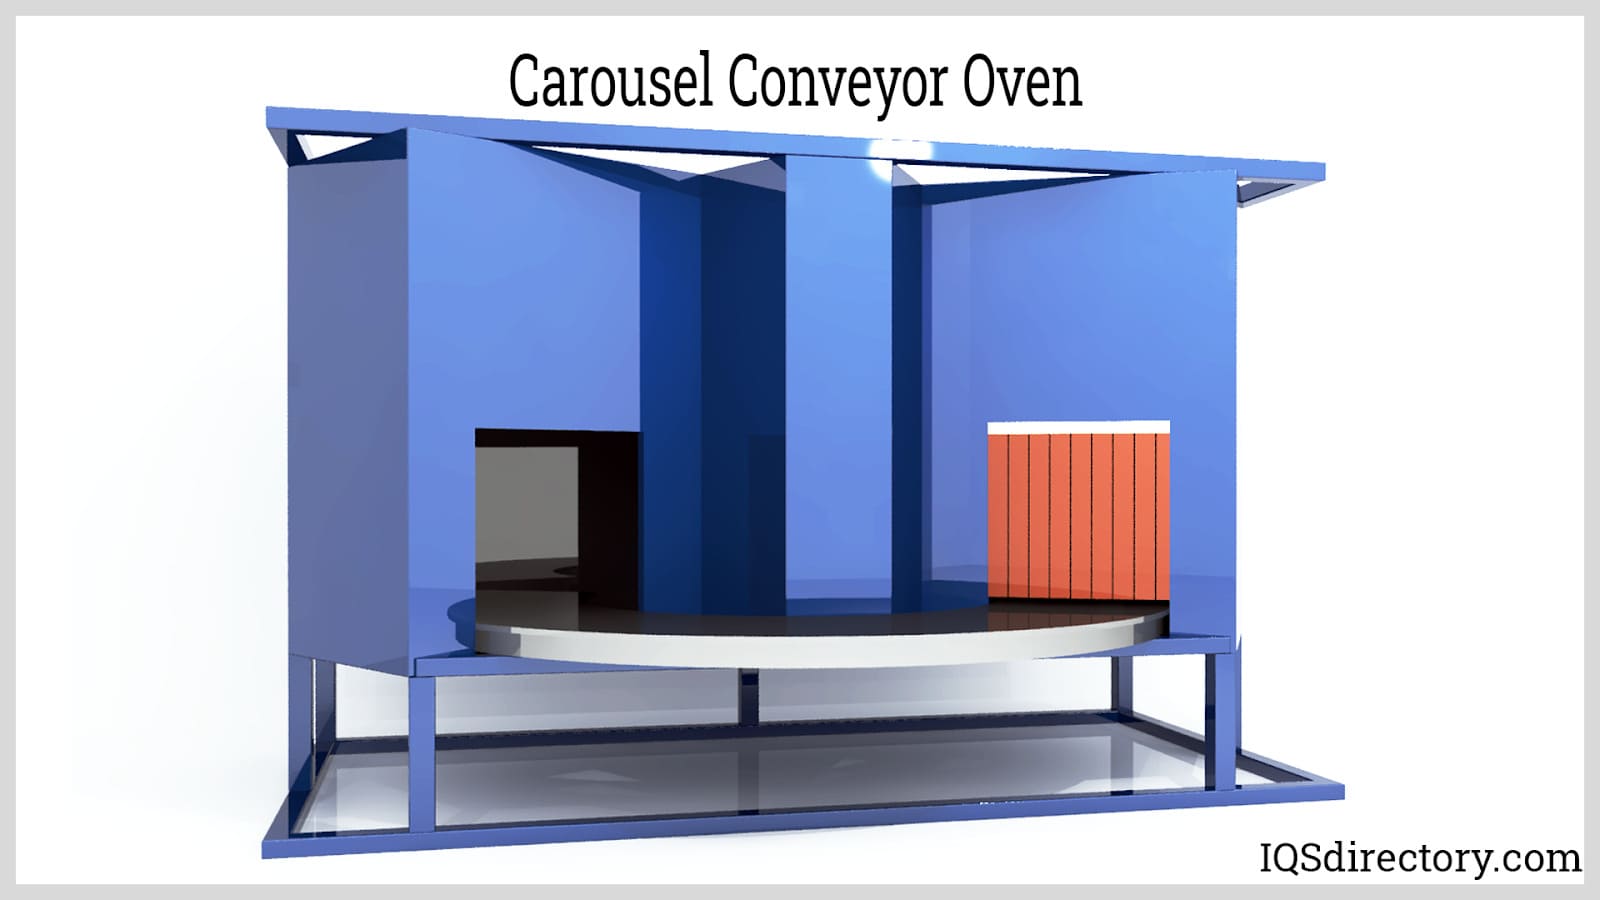 Carousel Conveyor Oven